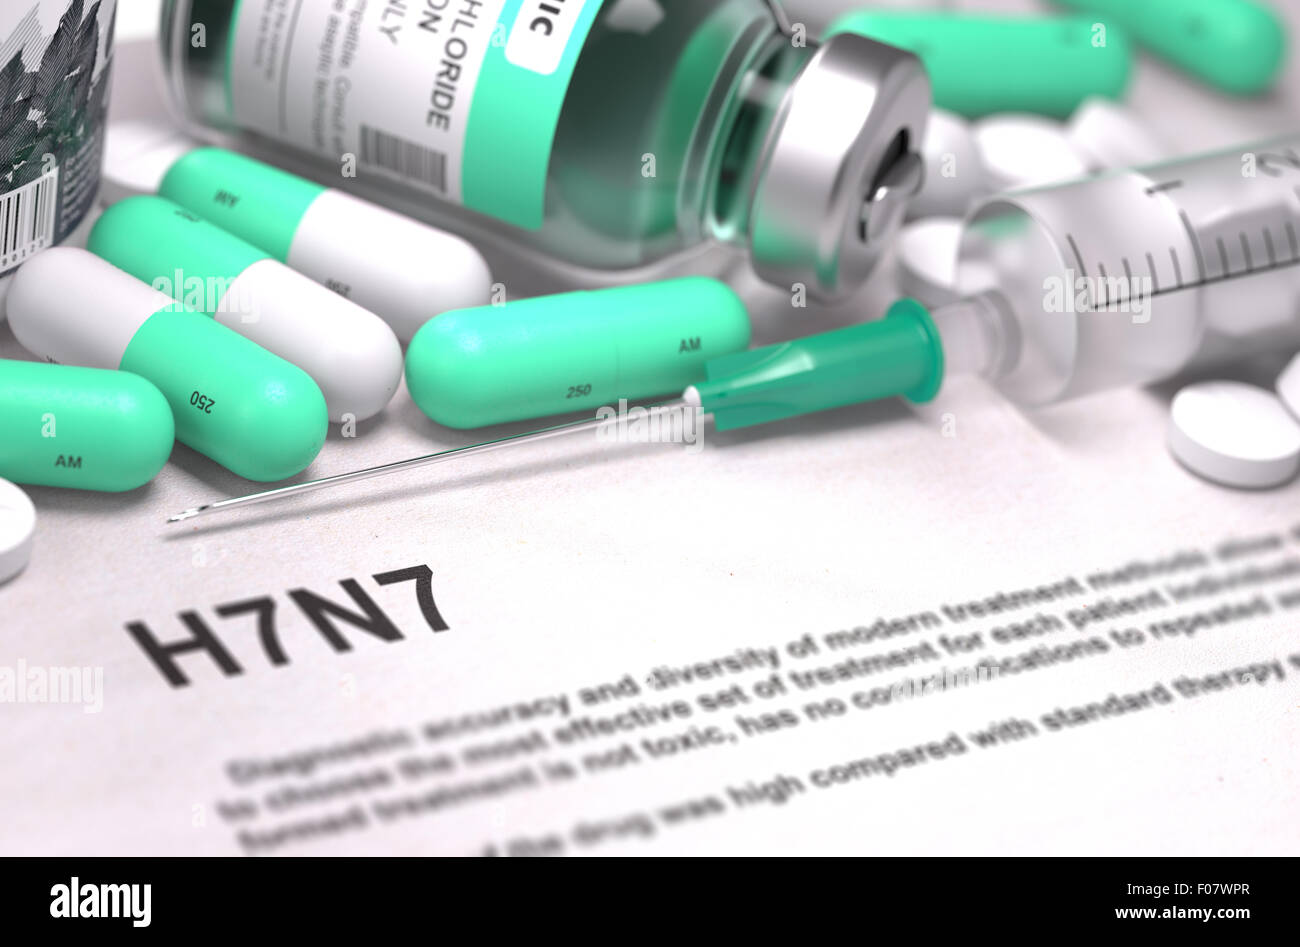 Diagnosi - H7N7. Concetto medico con sfondo sfocato. Foto Stock